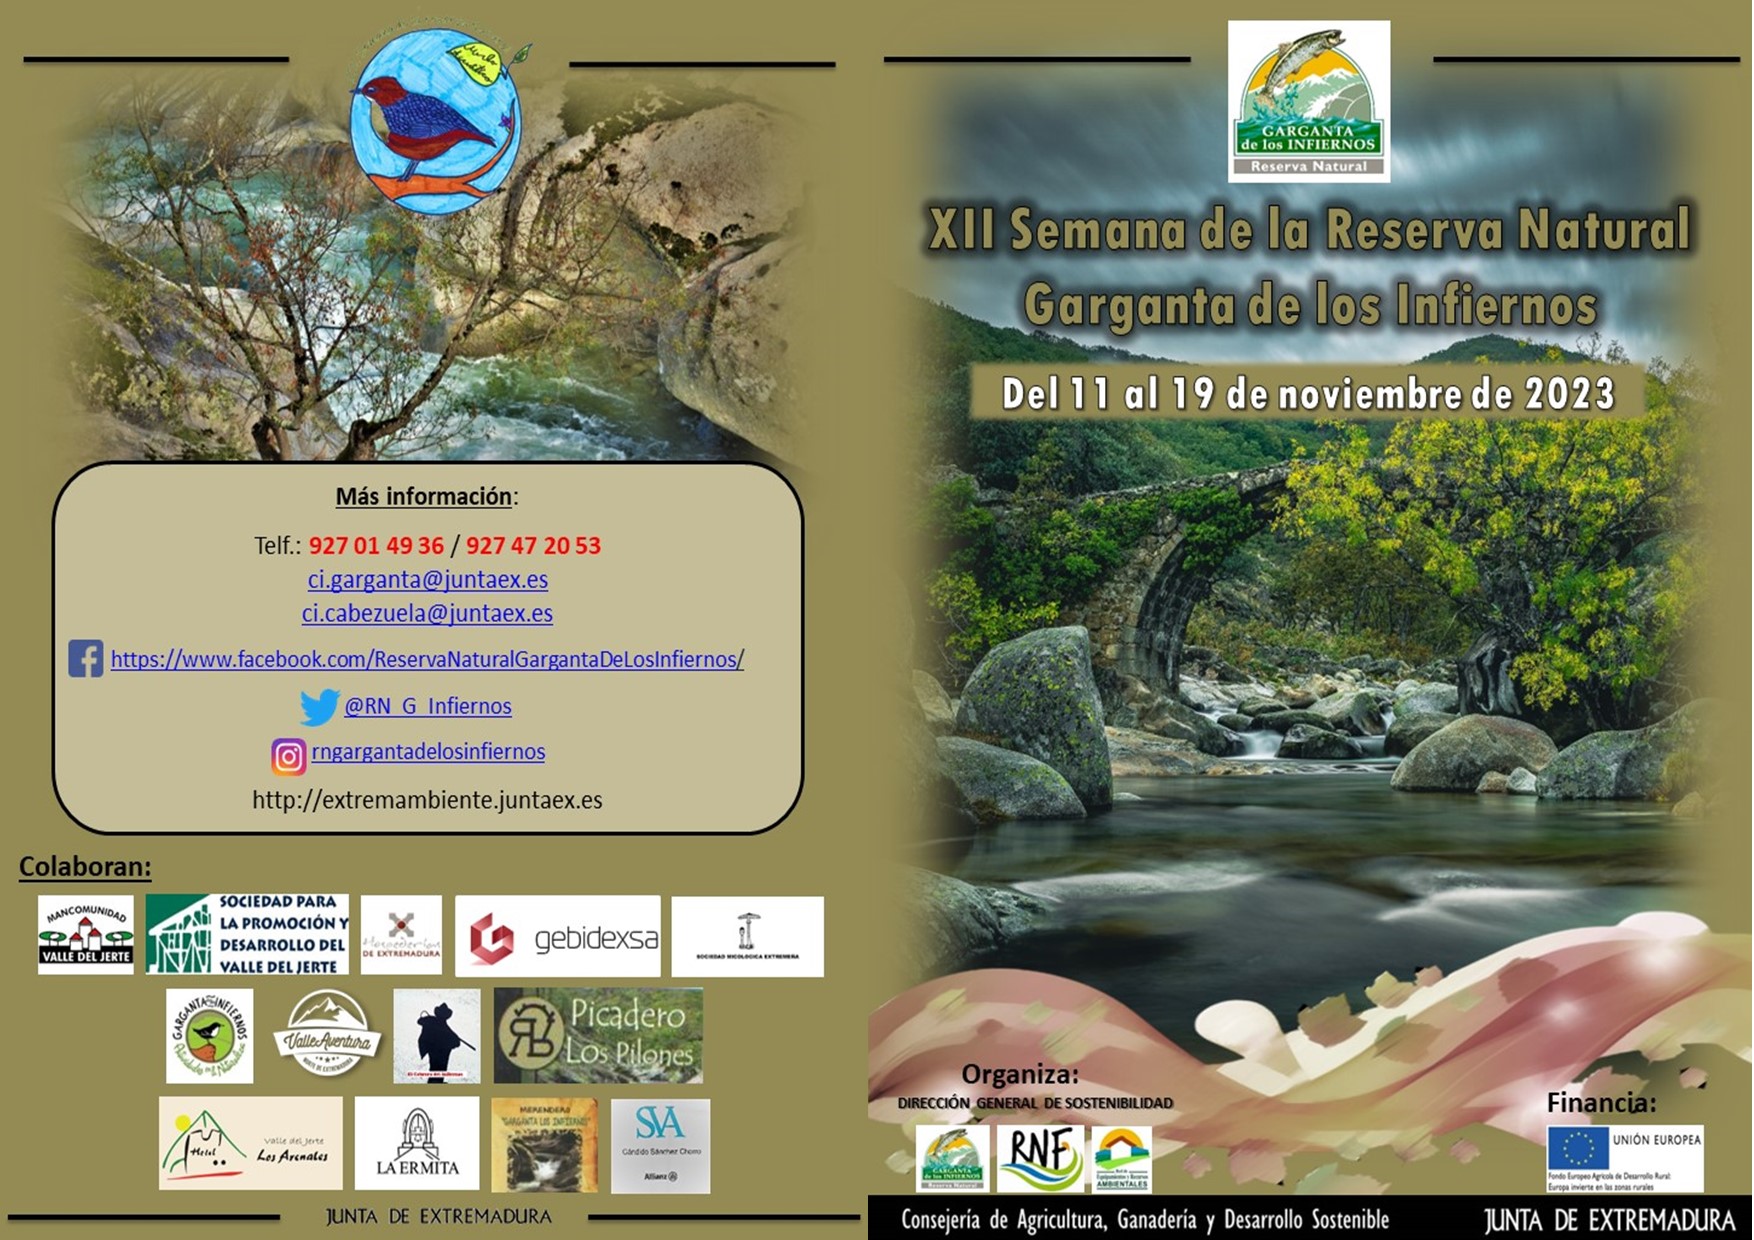 Image 0 of article La XII Semana de la Reserva Natural de la Garganta de los Infiernos se celebra del 11 al 19 de noviembre en el Valle del Jerte